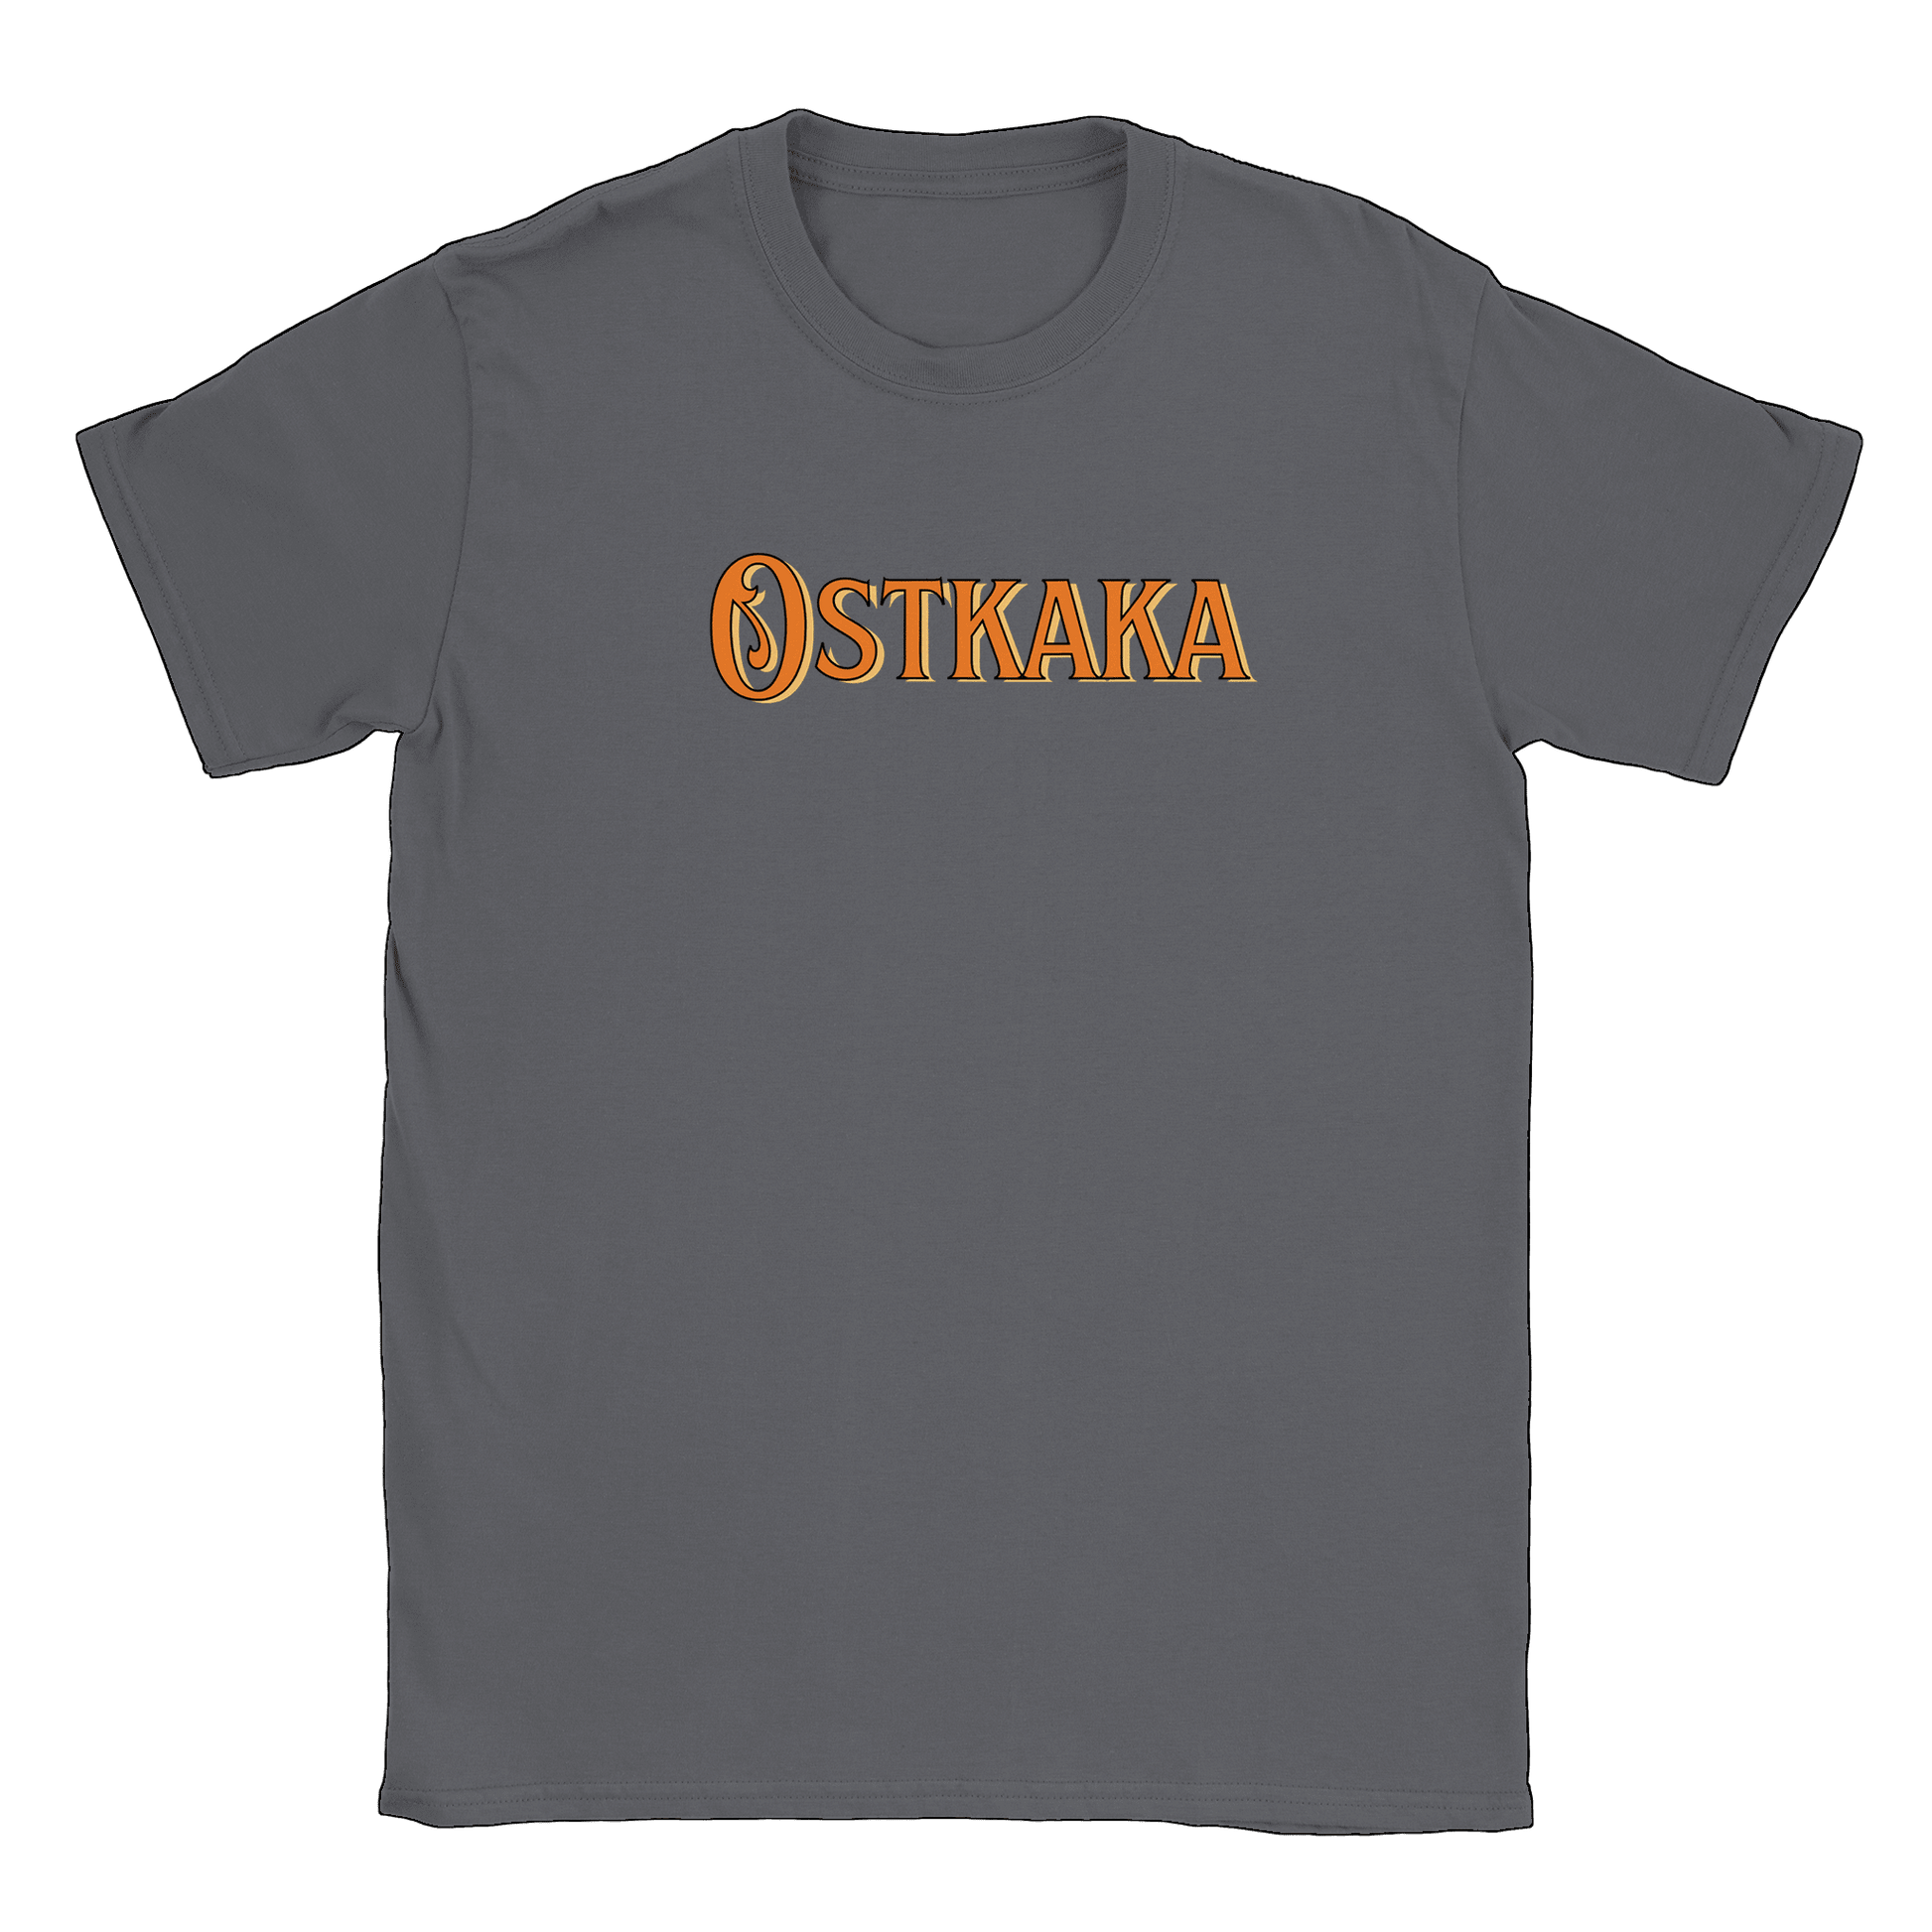 Ostkaka - T-shirt Charcoal